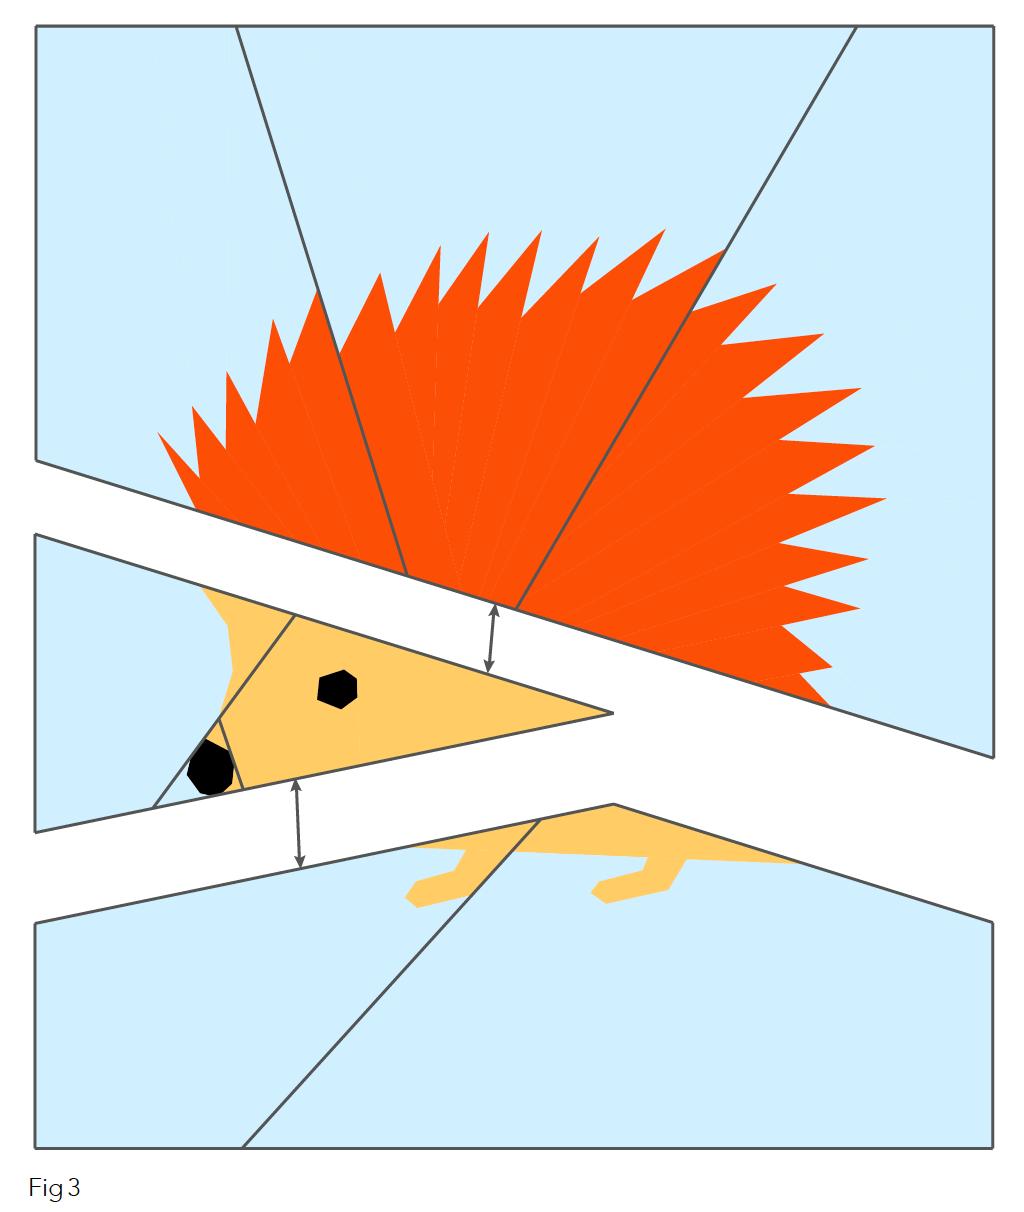 Hedgehog cushion Figure 3